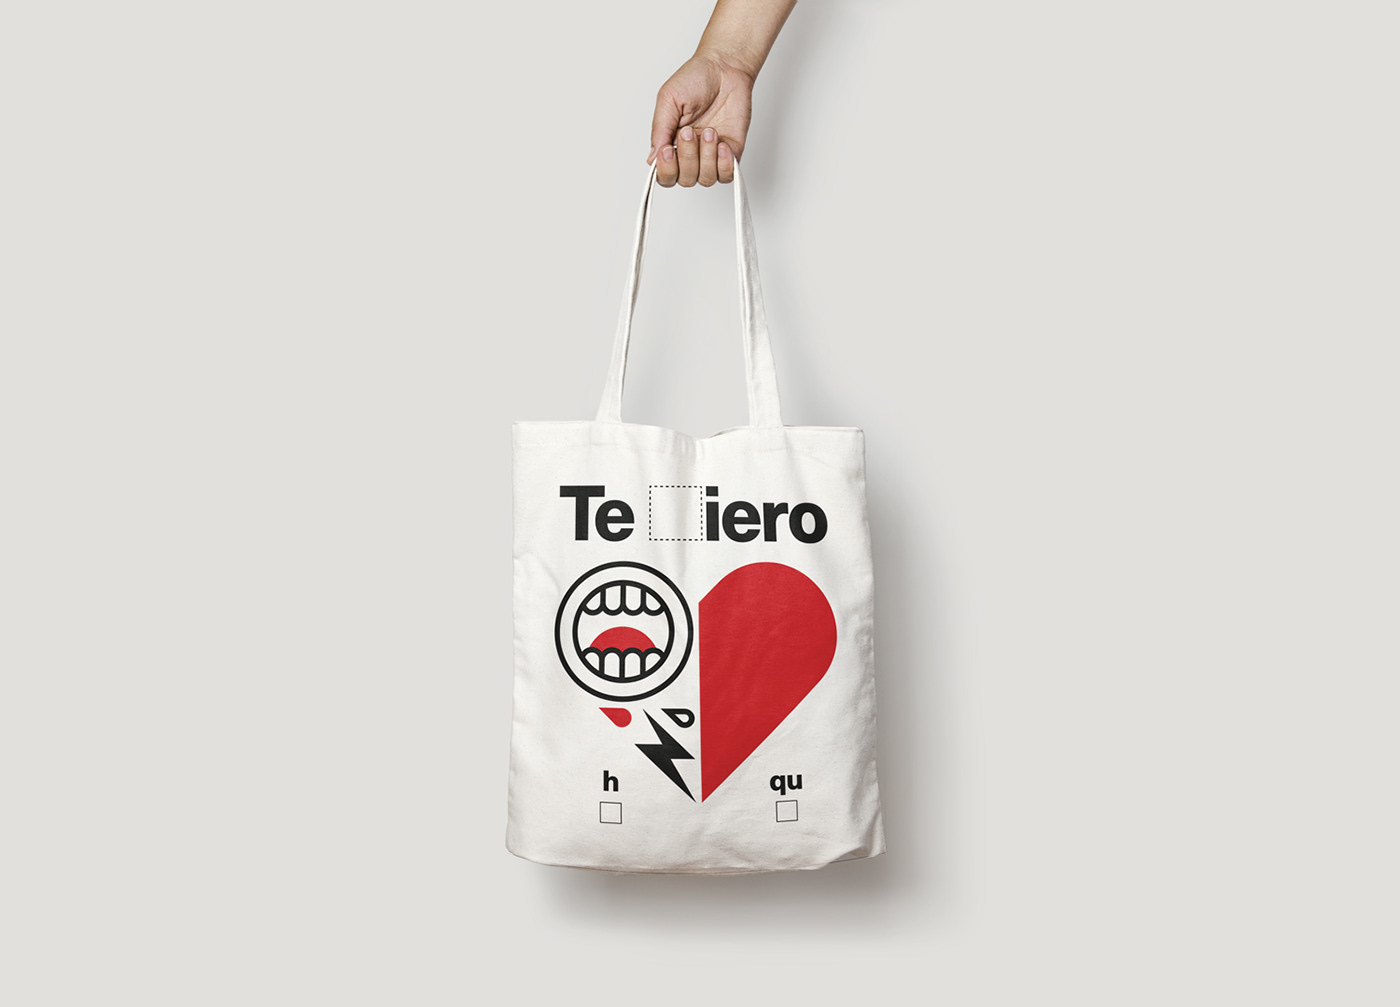 violencia de genero cartel Campaña heart elijo querer trie estimar Hombres MALTRATO campaign men